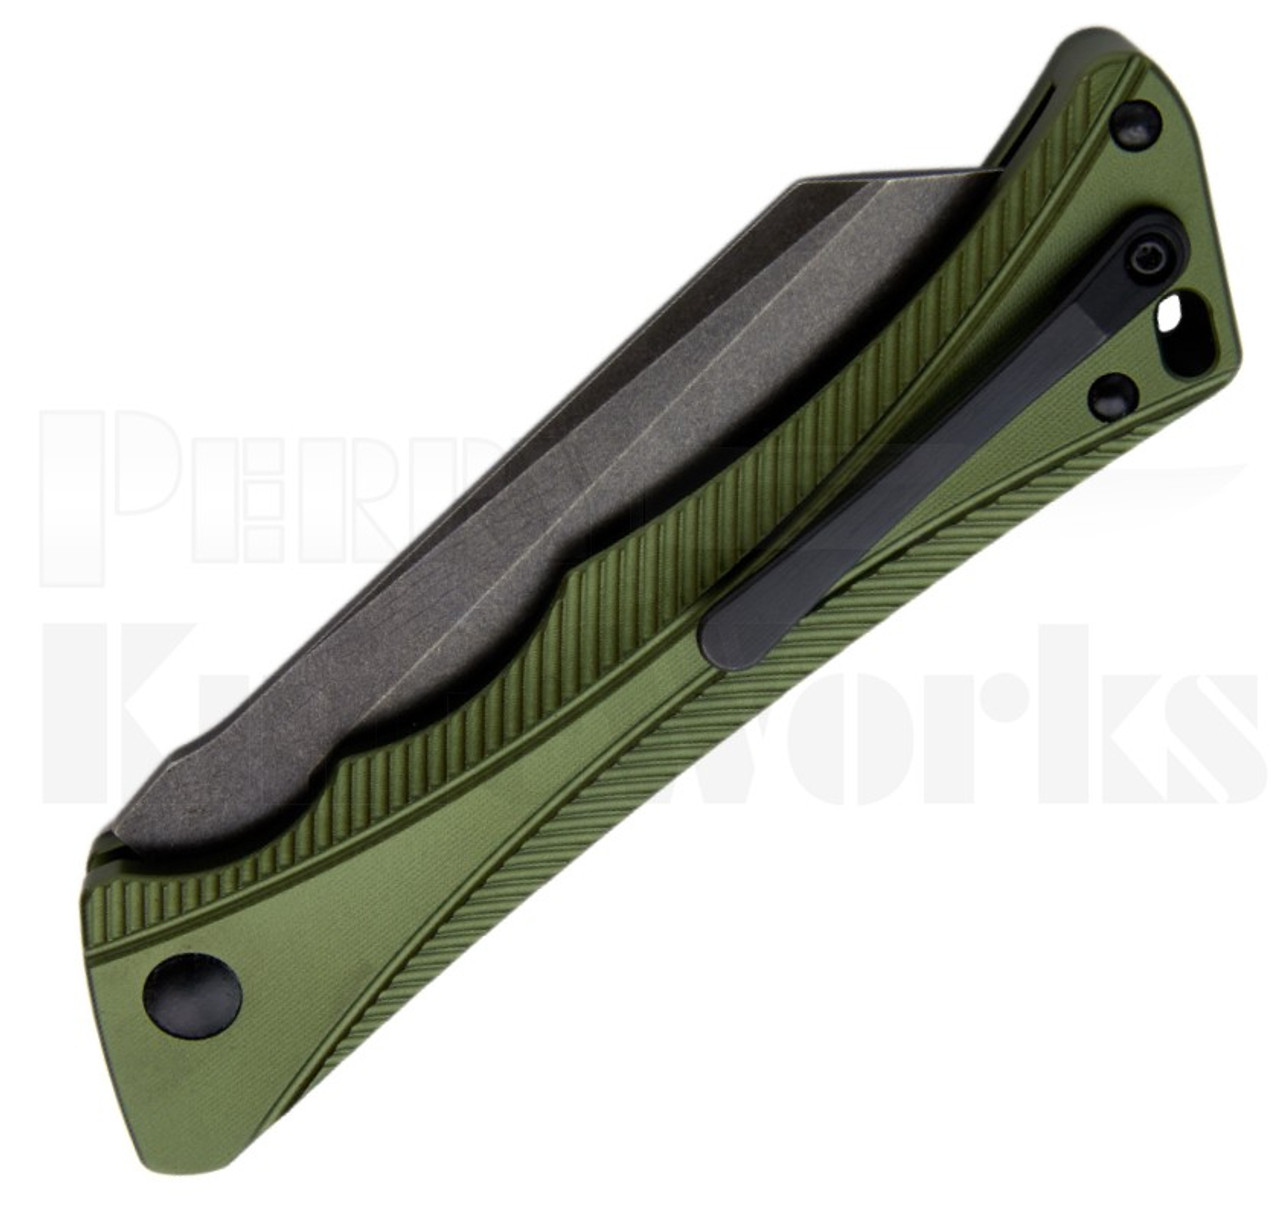 AKC X-treme Smarty Automatic Knife Green/Black l Blackwash Blade